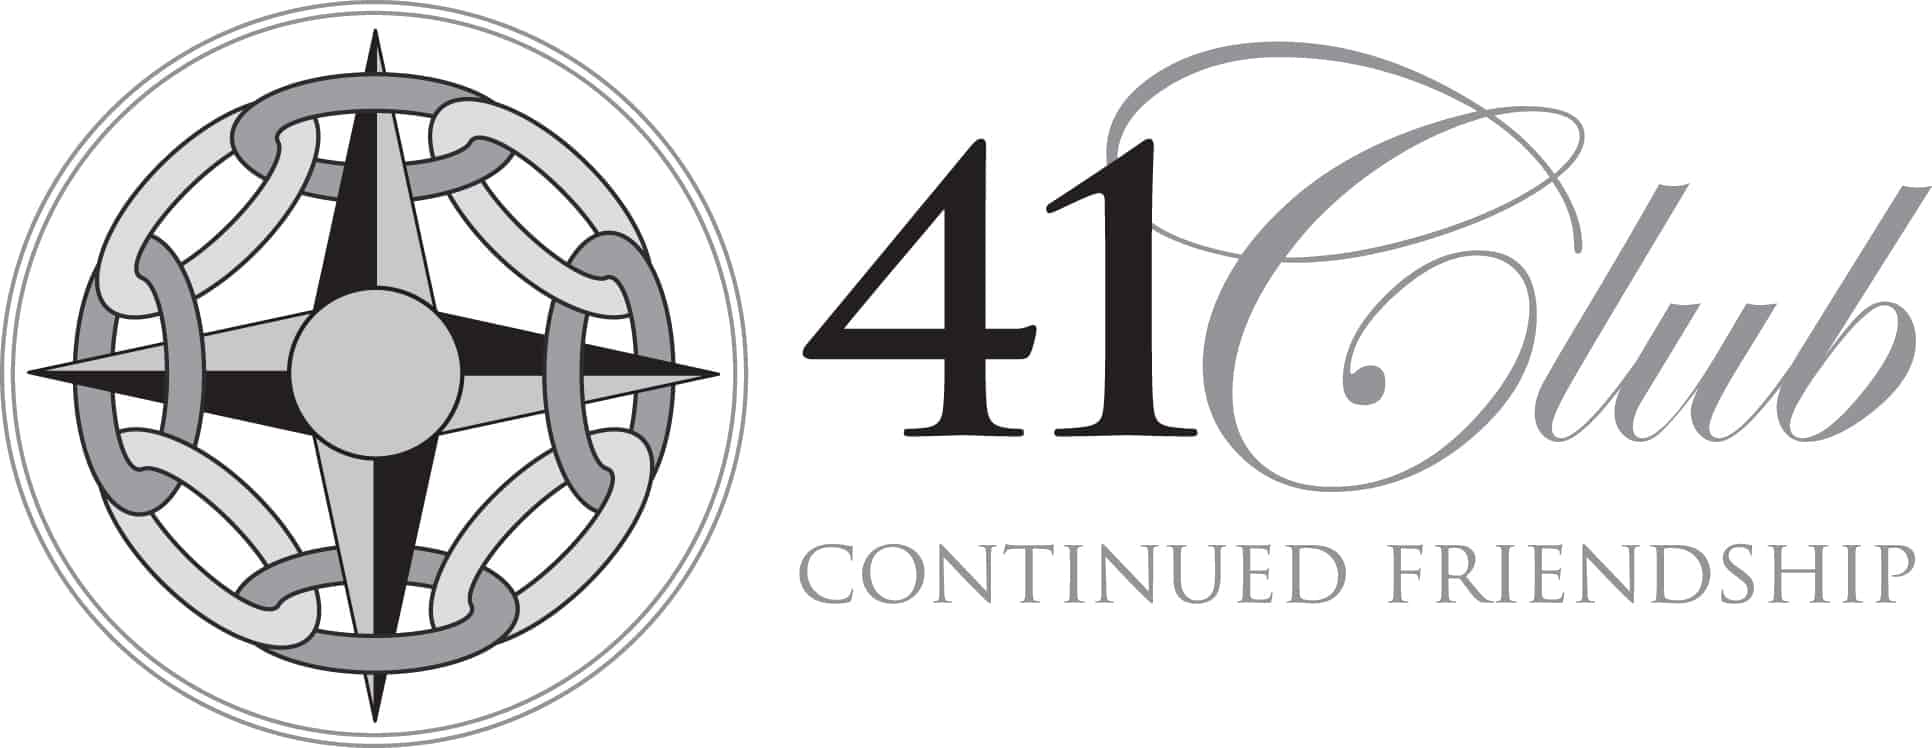 41club-logo_orig